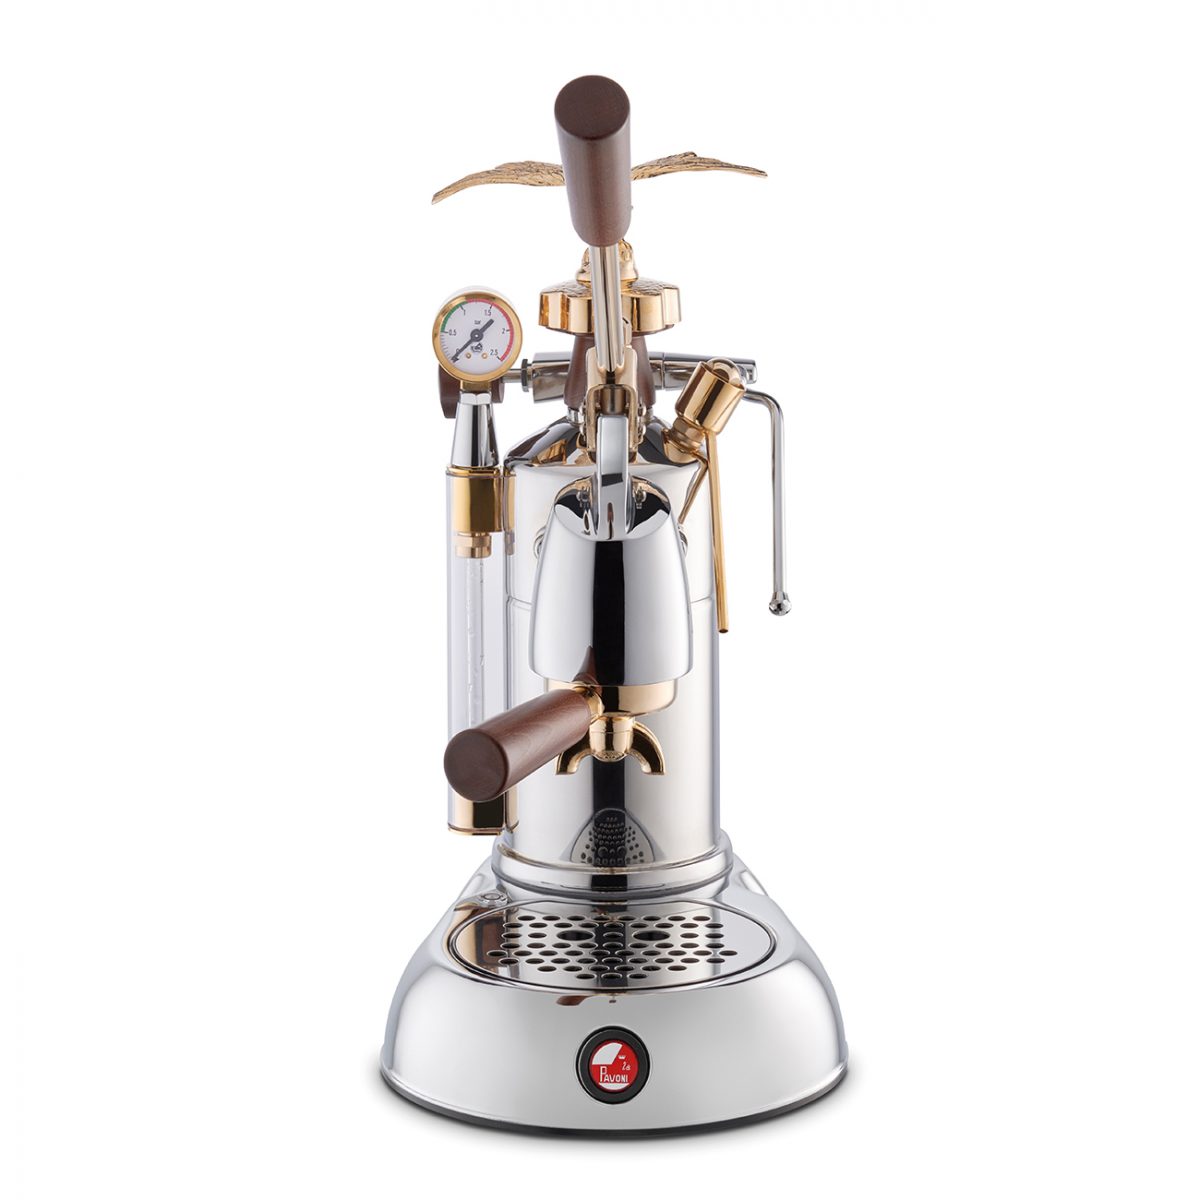 La Pavoni Coffee Machine Espresso Expo 2015